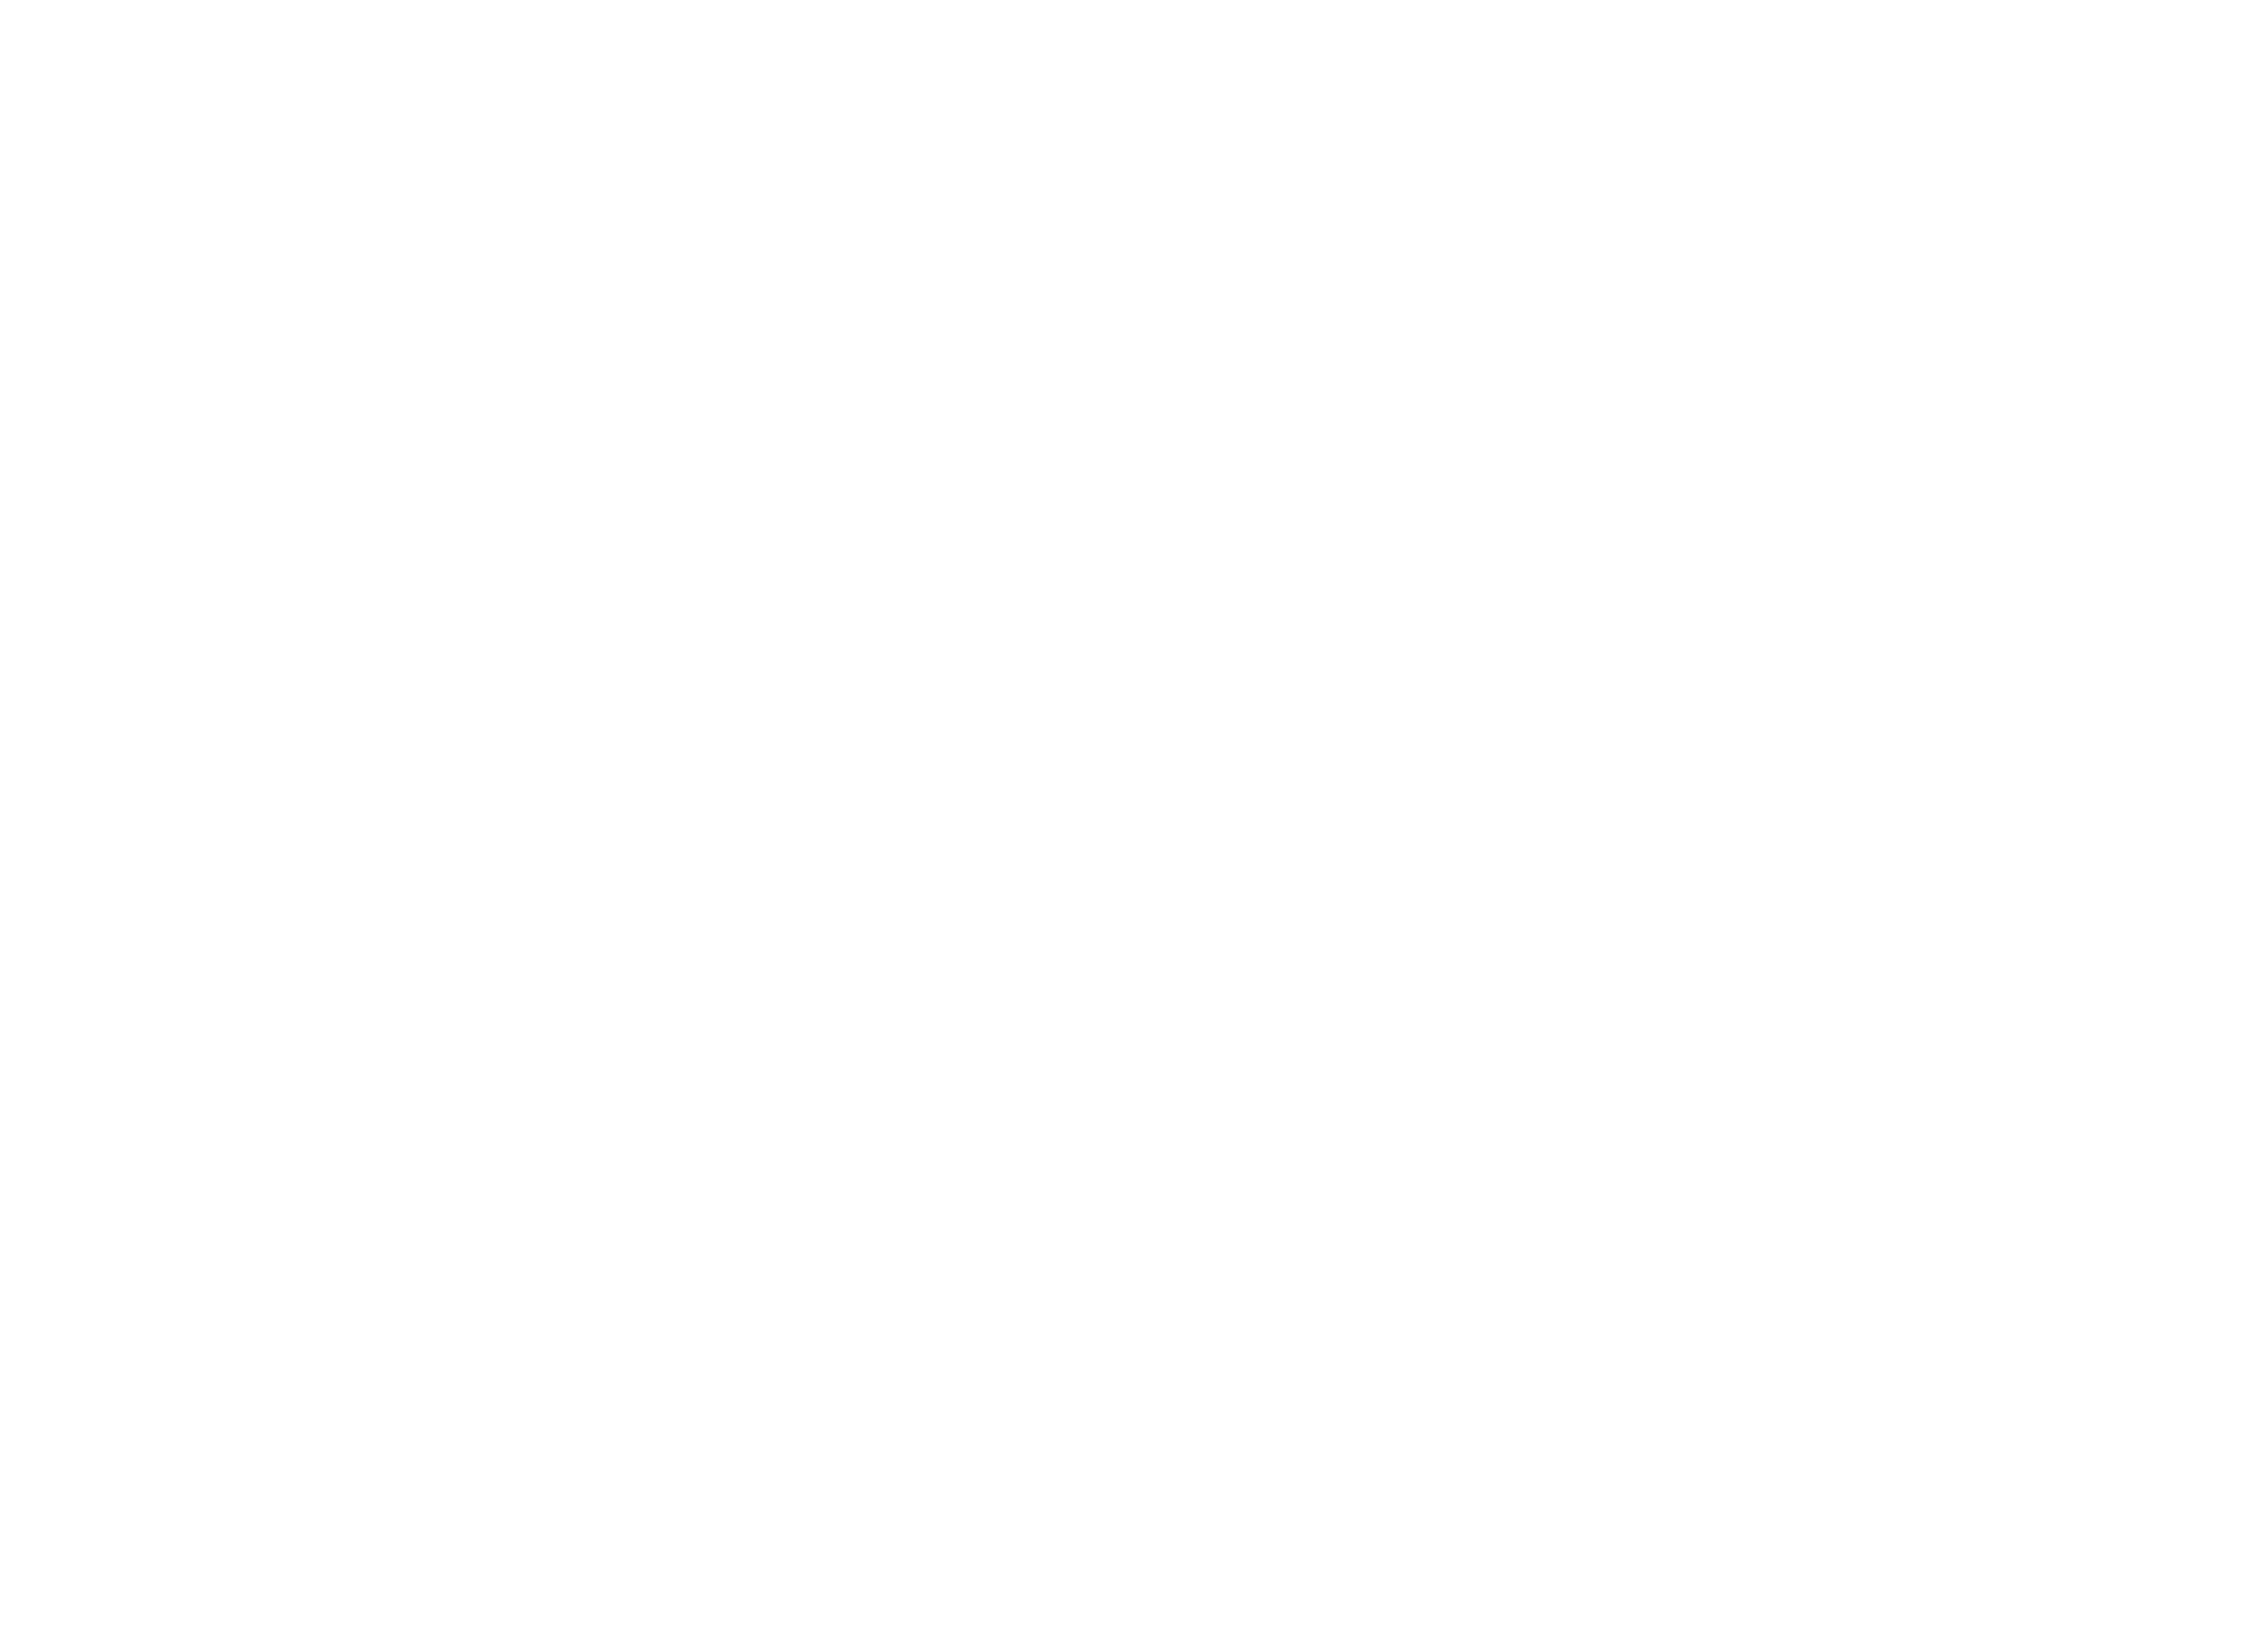 BBIS Berlin Brandenburg International School